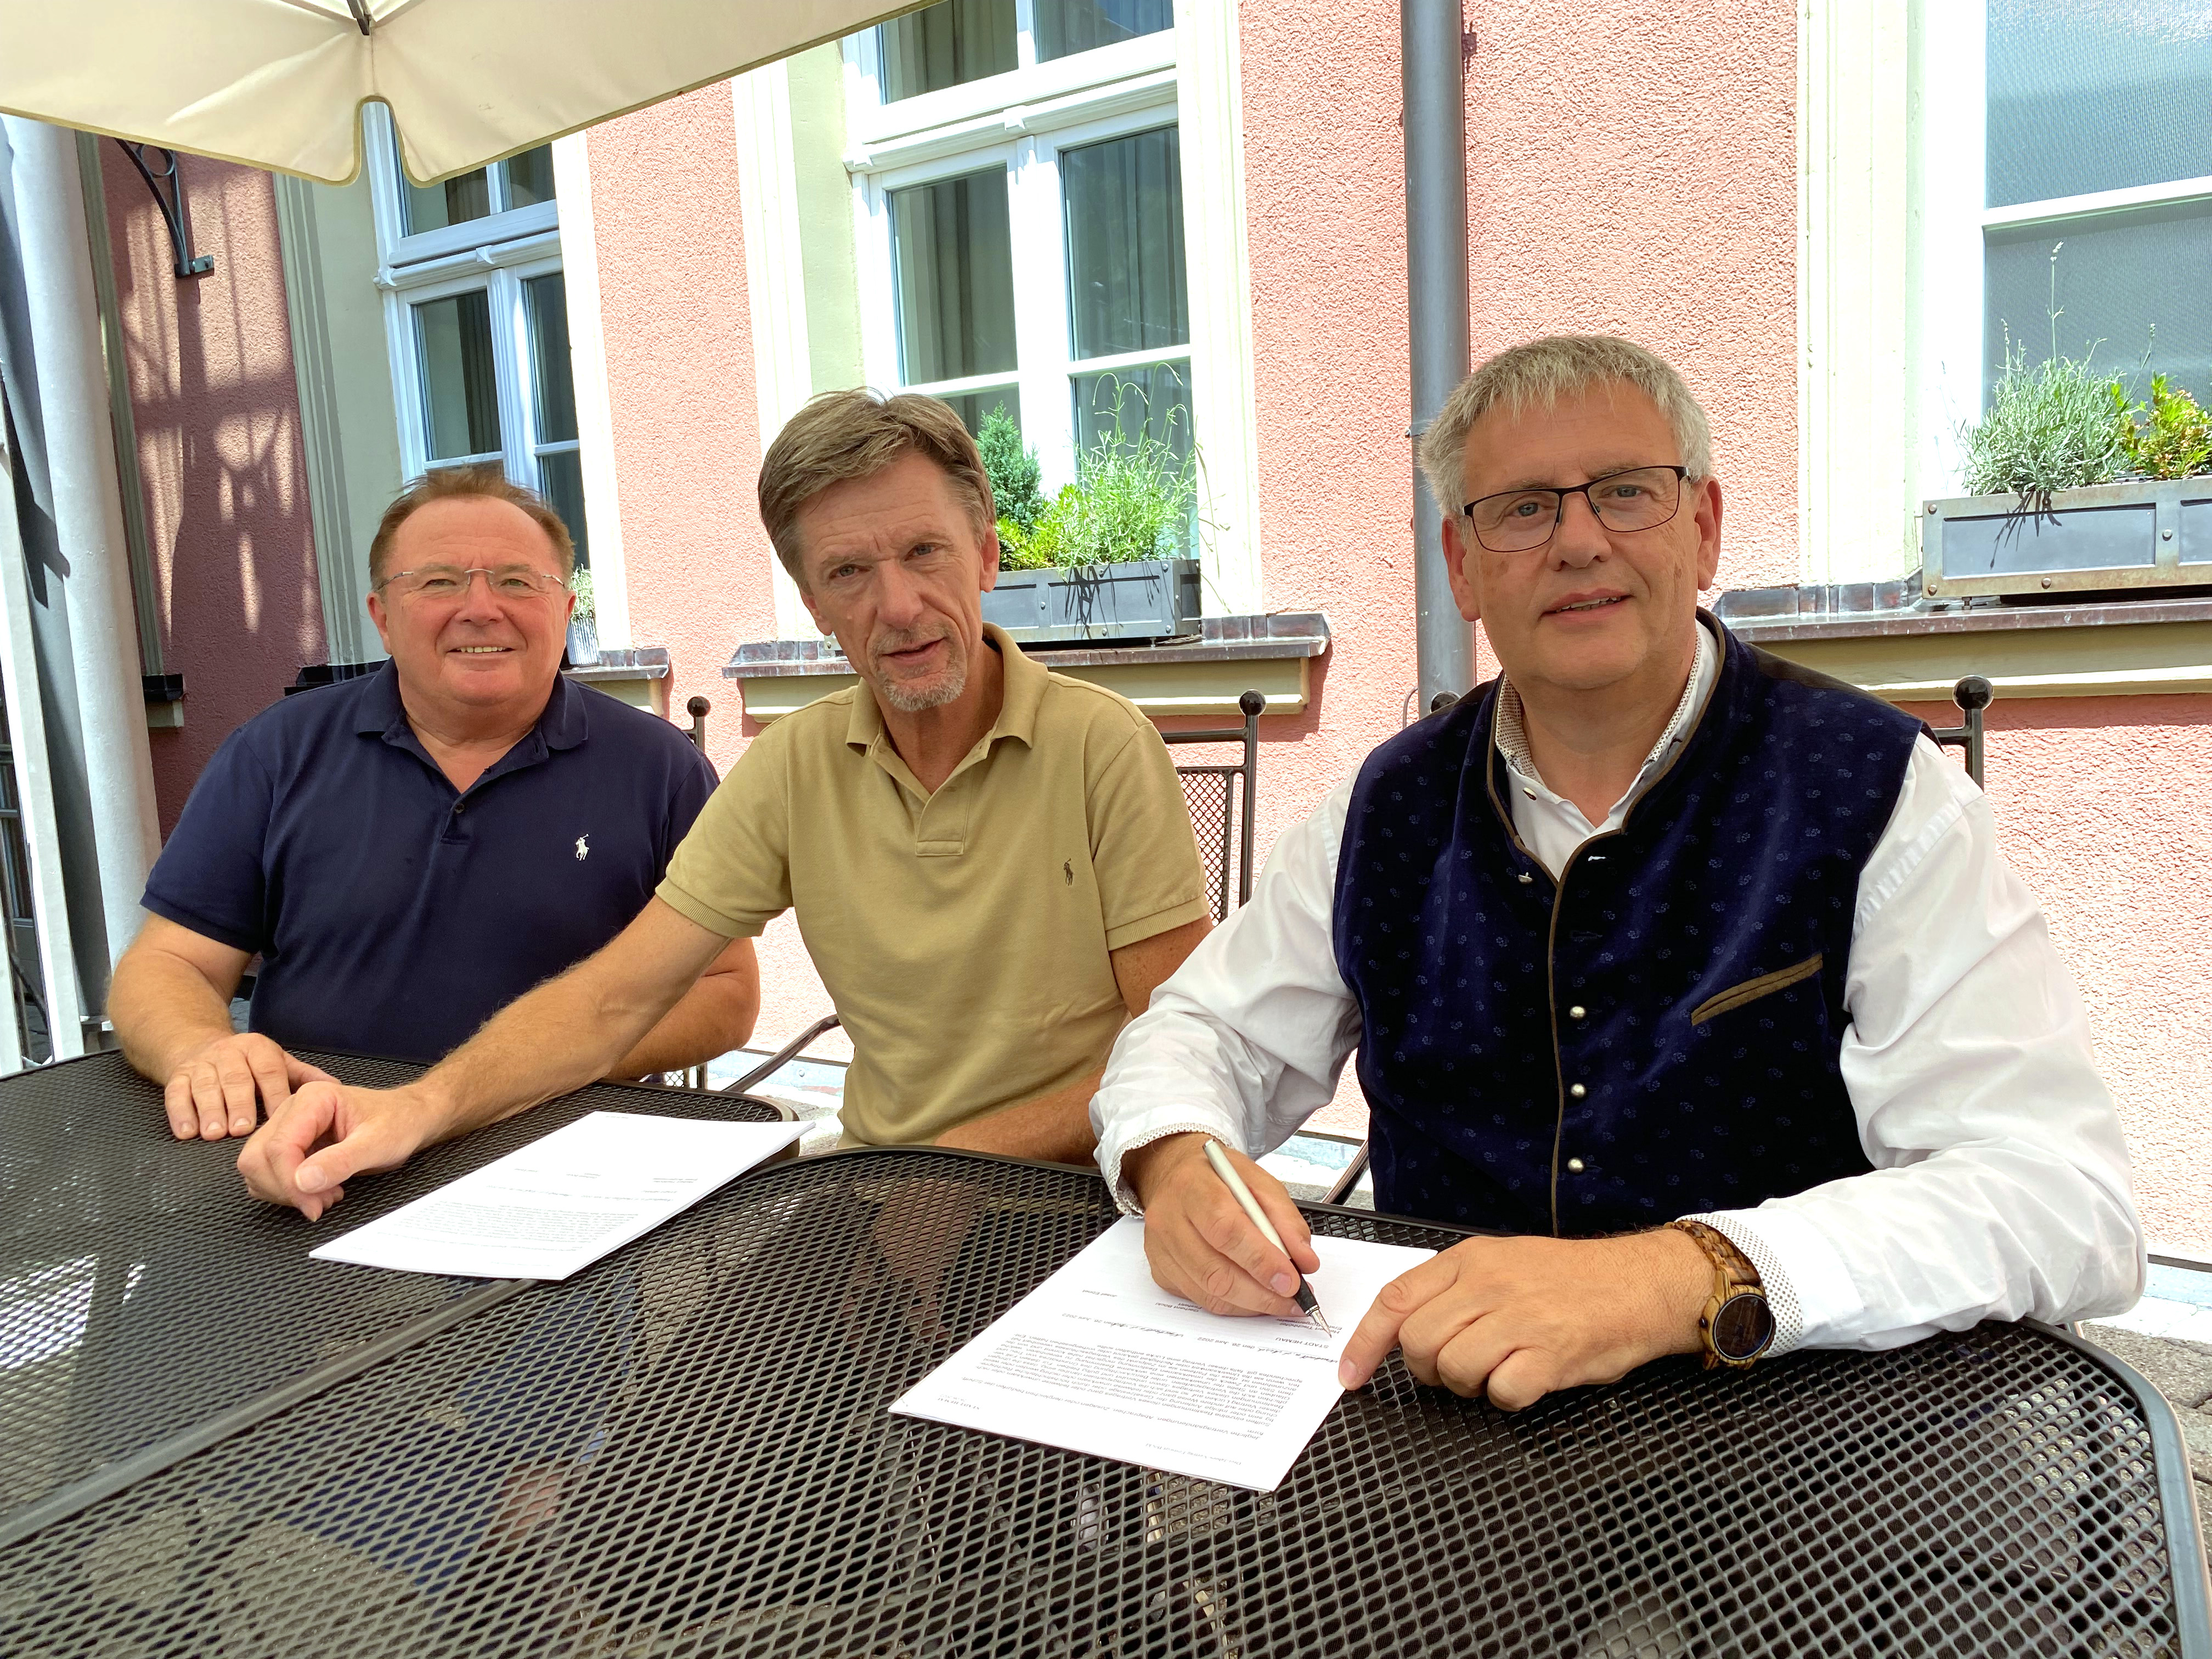 Bürgermeister Herbert Tischhöfer (rechts) und die Gesellschafter von Festbetriebe Böckl GbR, Josef Ebnet (Mitte) und Gerhard Böckl (links), beim Unterzeichnen der Verträge